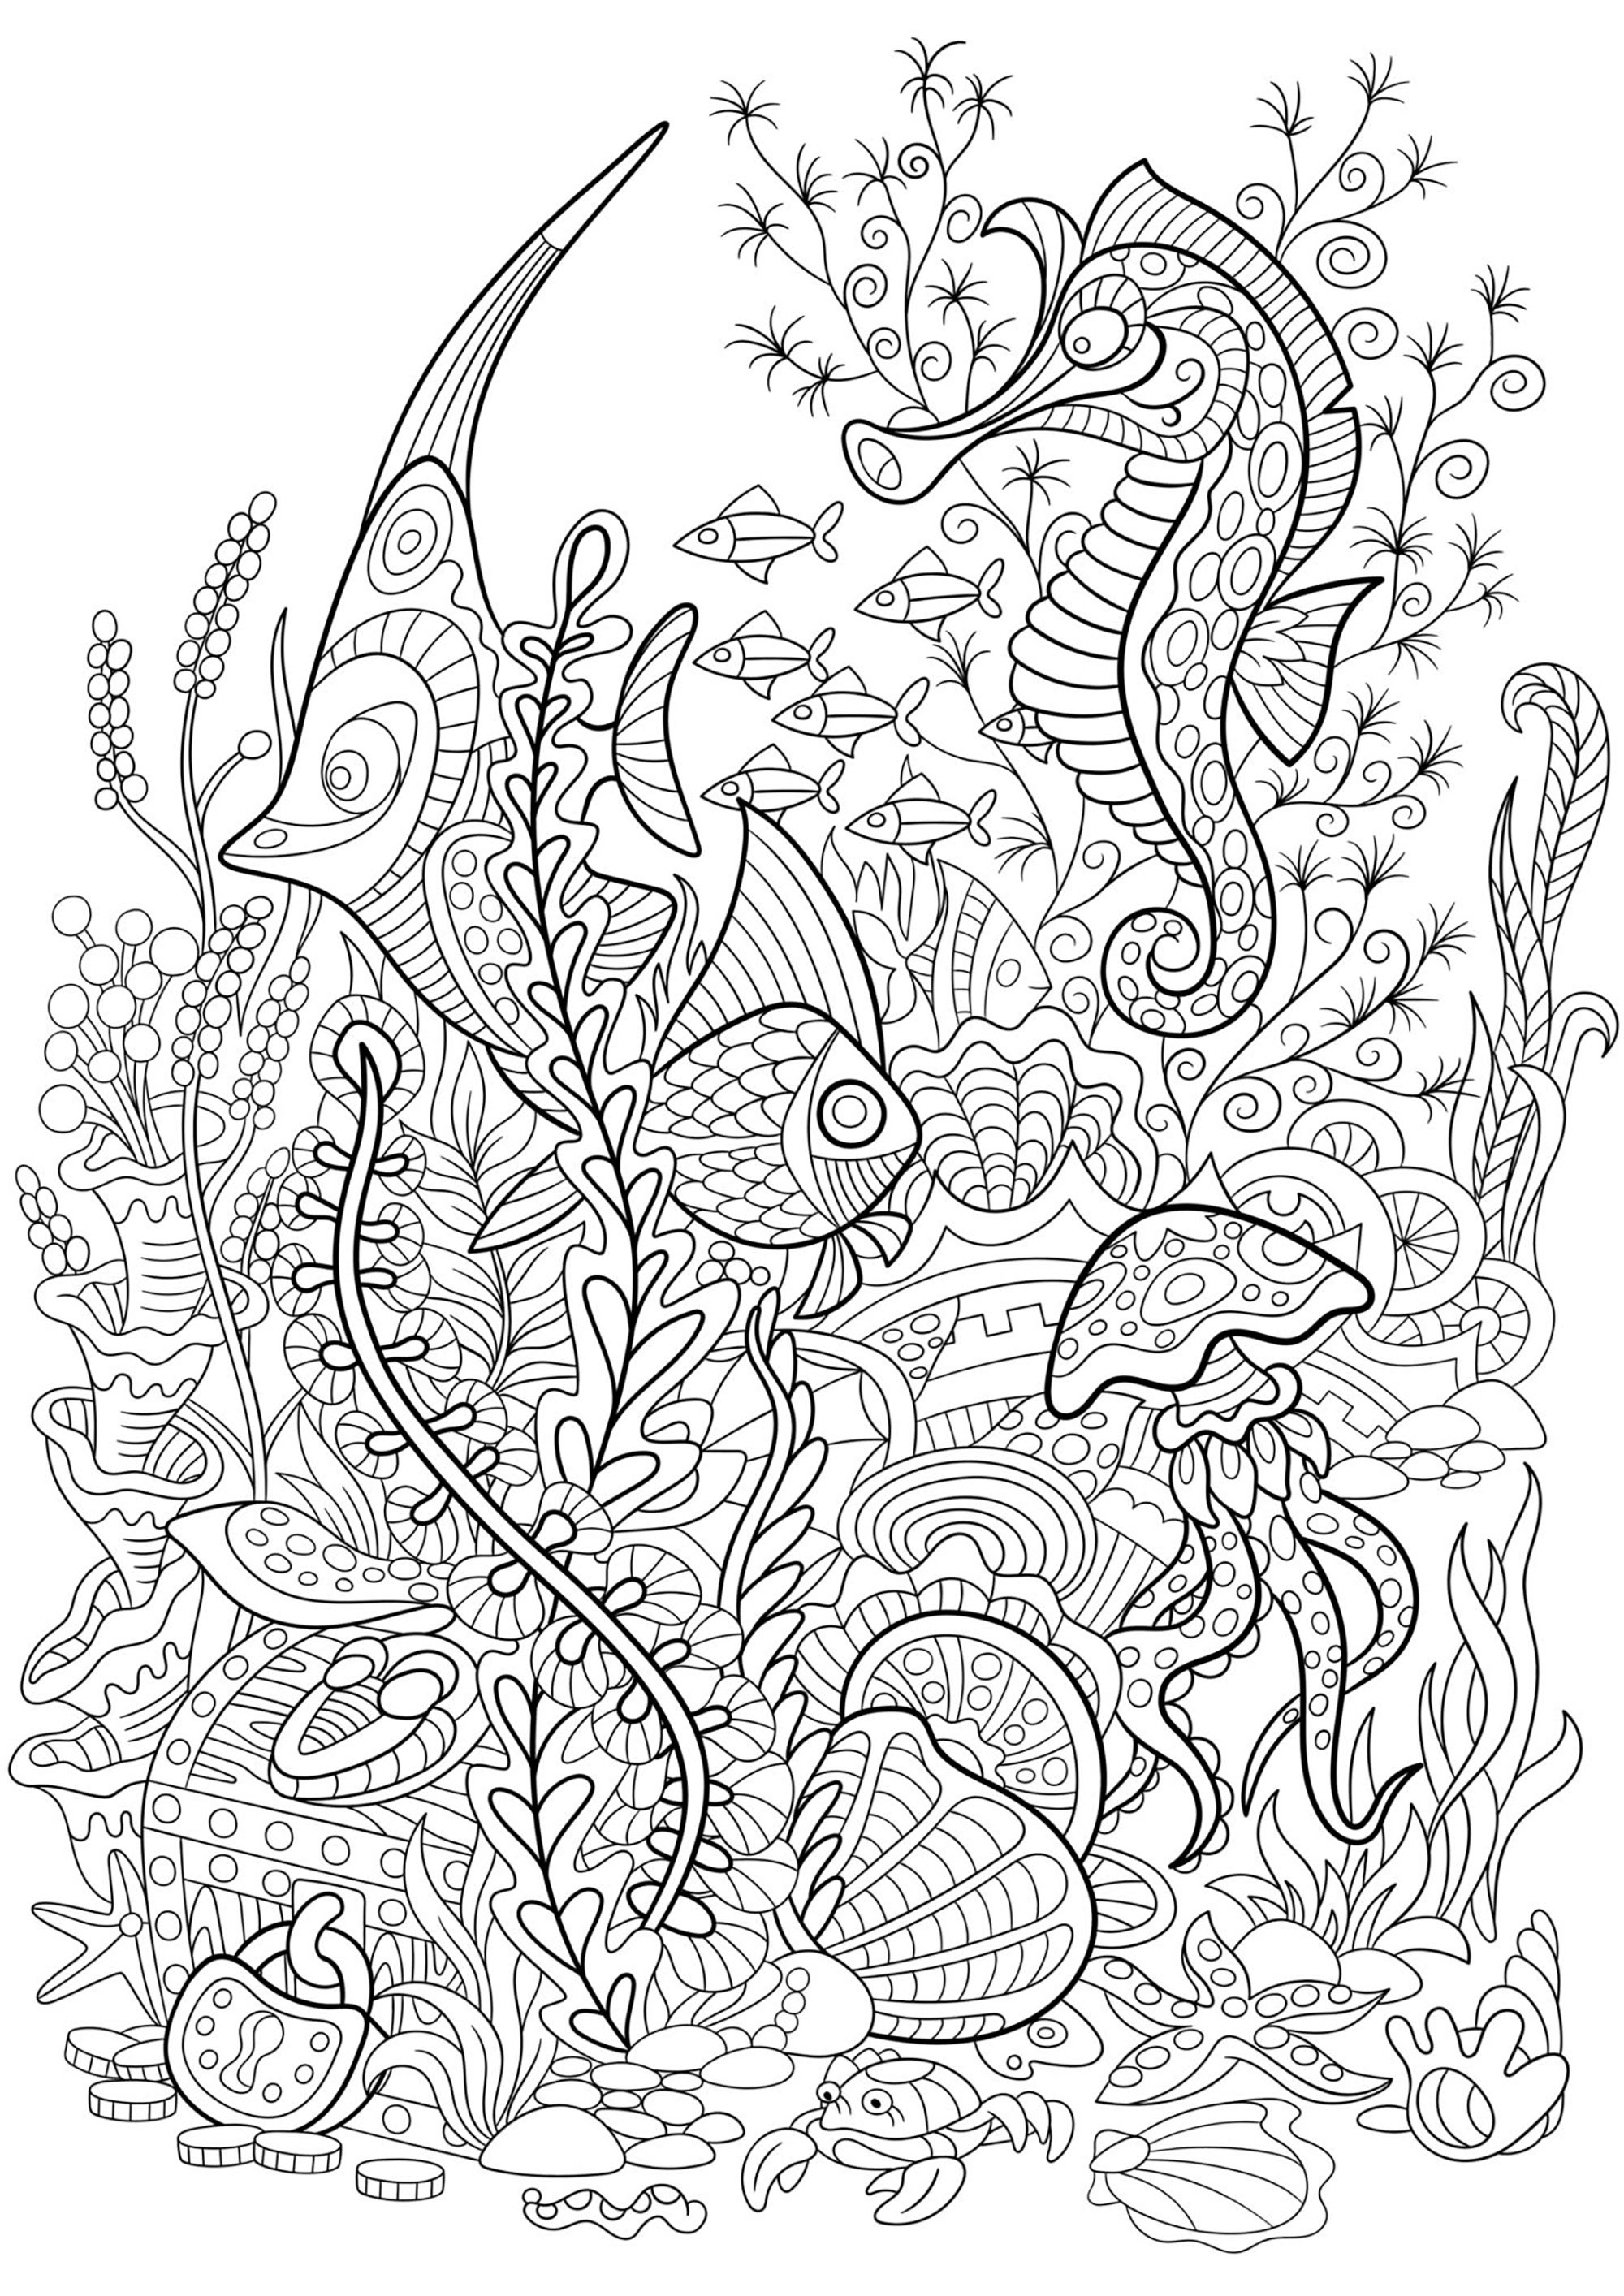 Seaworld mit Fischen, Seepferdchen, Quallen und Wasserpflanzen, Künstler : Sybirko